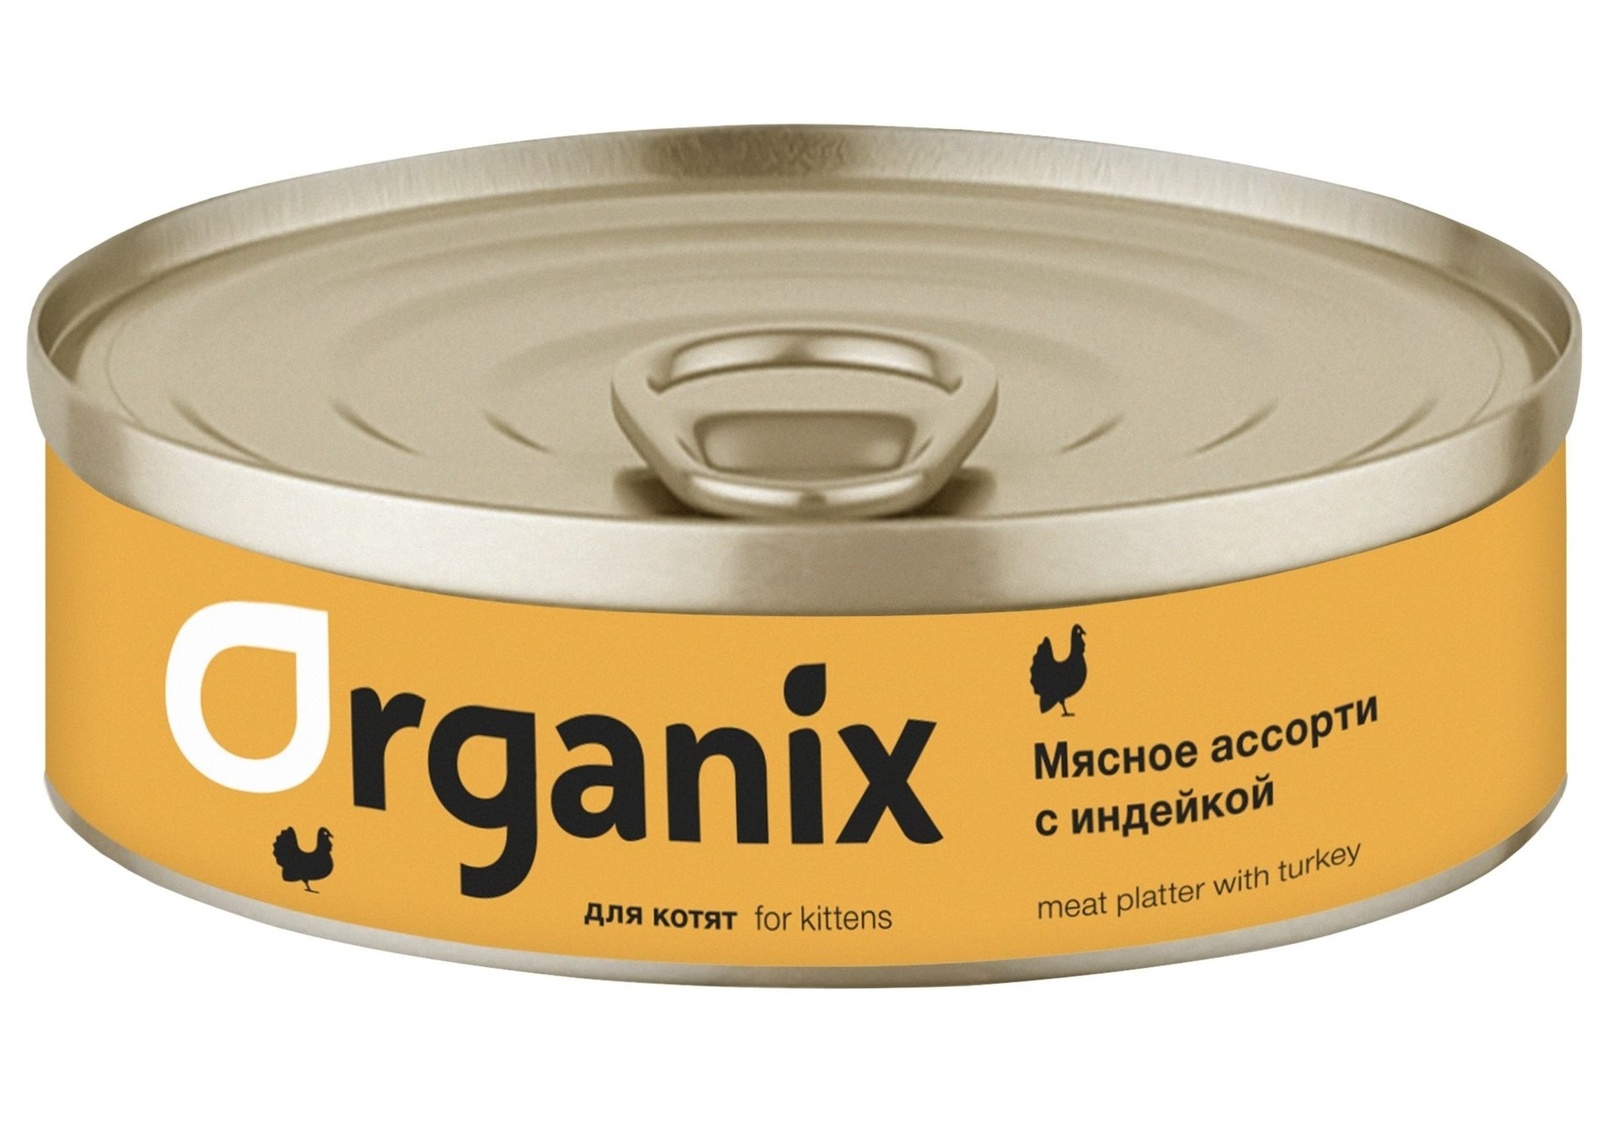 Organix консервы Organix консервы для котят Мясное ассорти с индейкой (100 г) organix консервы organix консервы для щенков мясное ассорти с кроликом 100 г